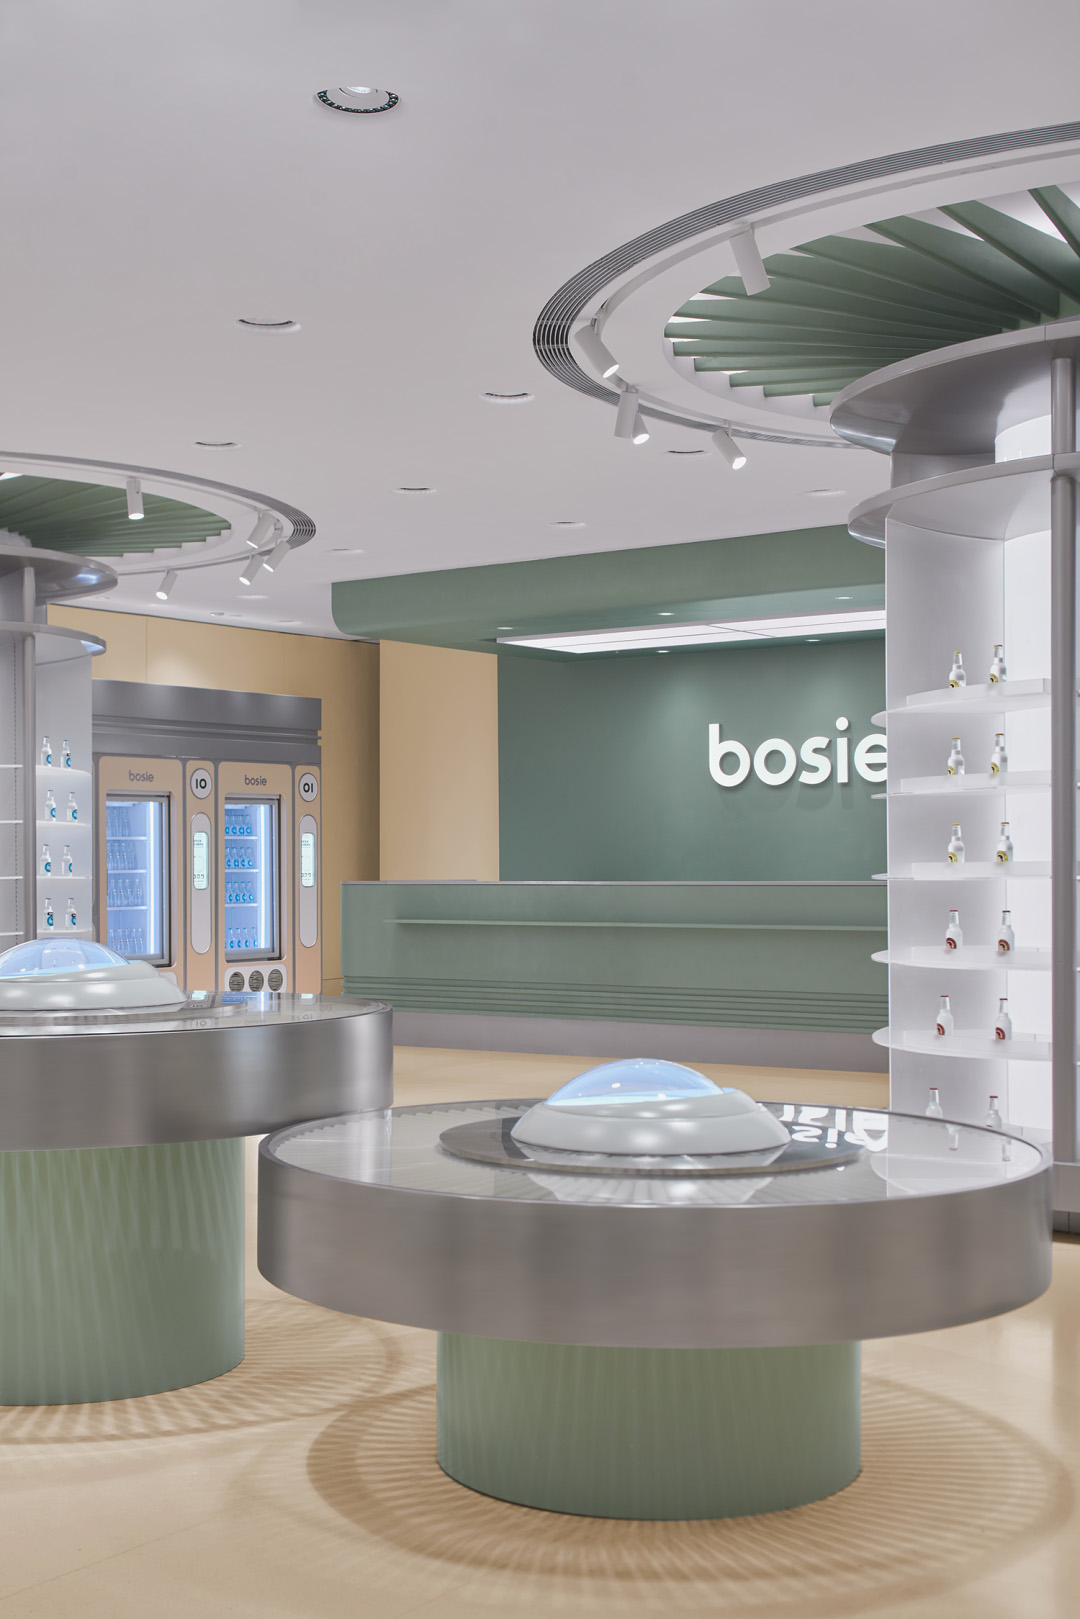 bosie「SPACE」,bosie,上海bosie,bosie旗艦店,快時尚店設計,體驗店設計,零售店設計,網紅店設計,上海網紅店,立品設計Leaping Creative,立品設計